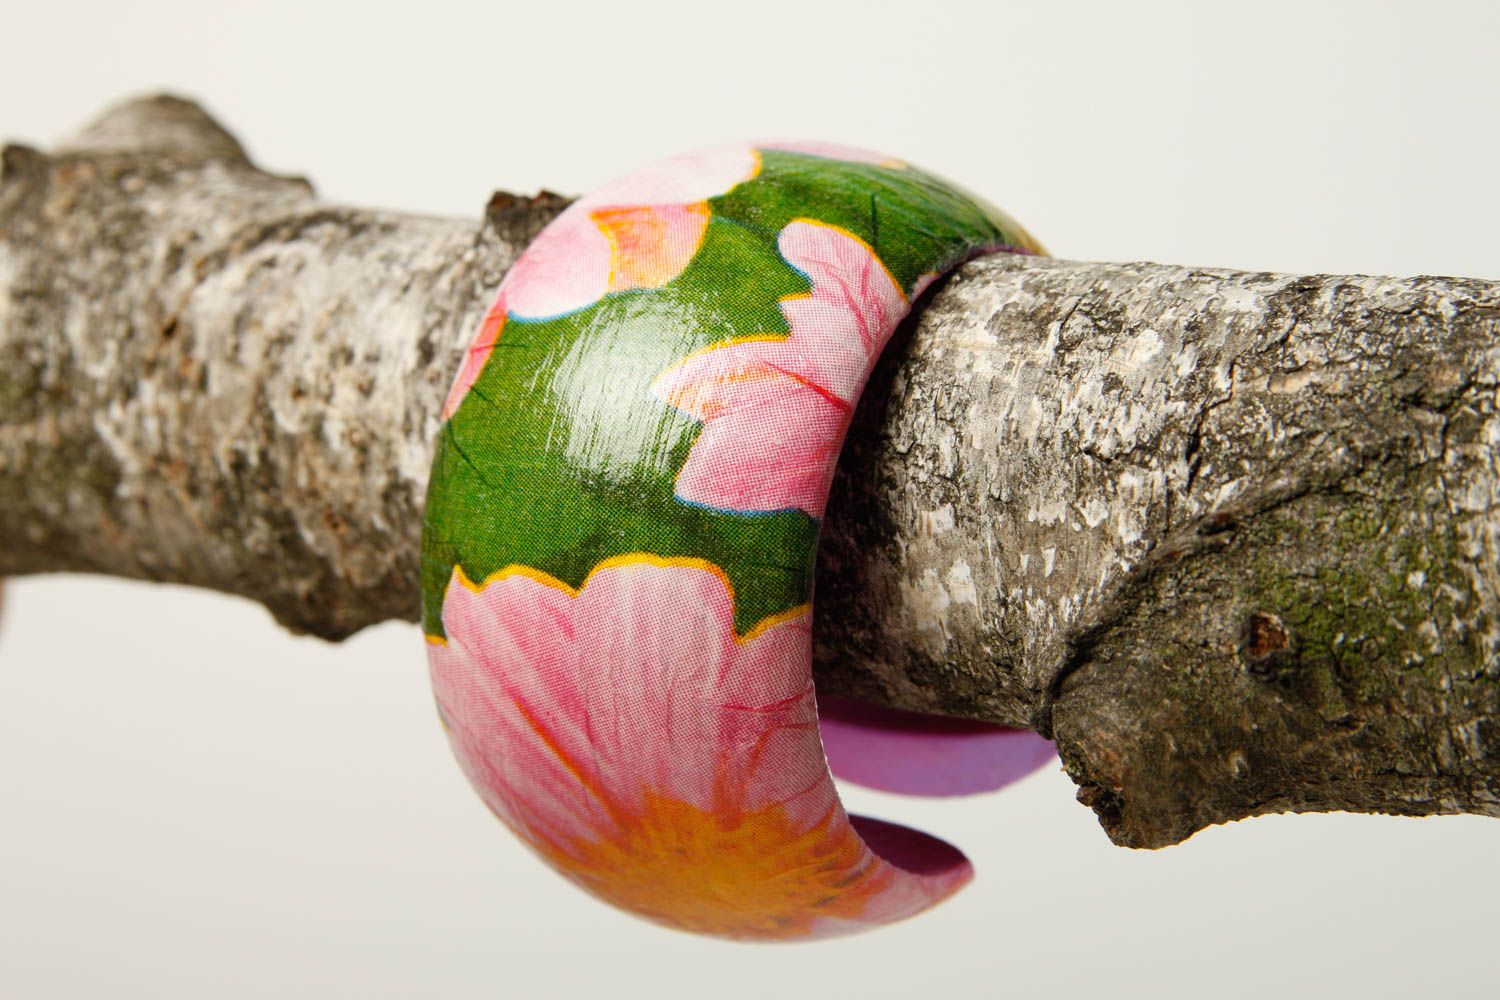 Украшение ручной работы деревянное изделие браслет на руку широкий с цветами фото 2